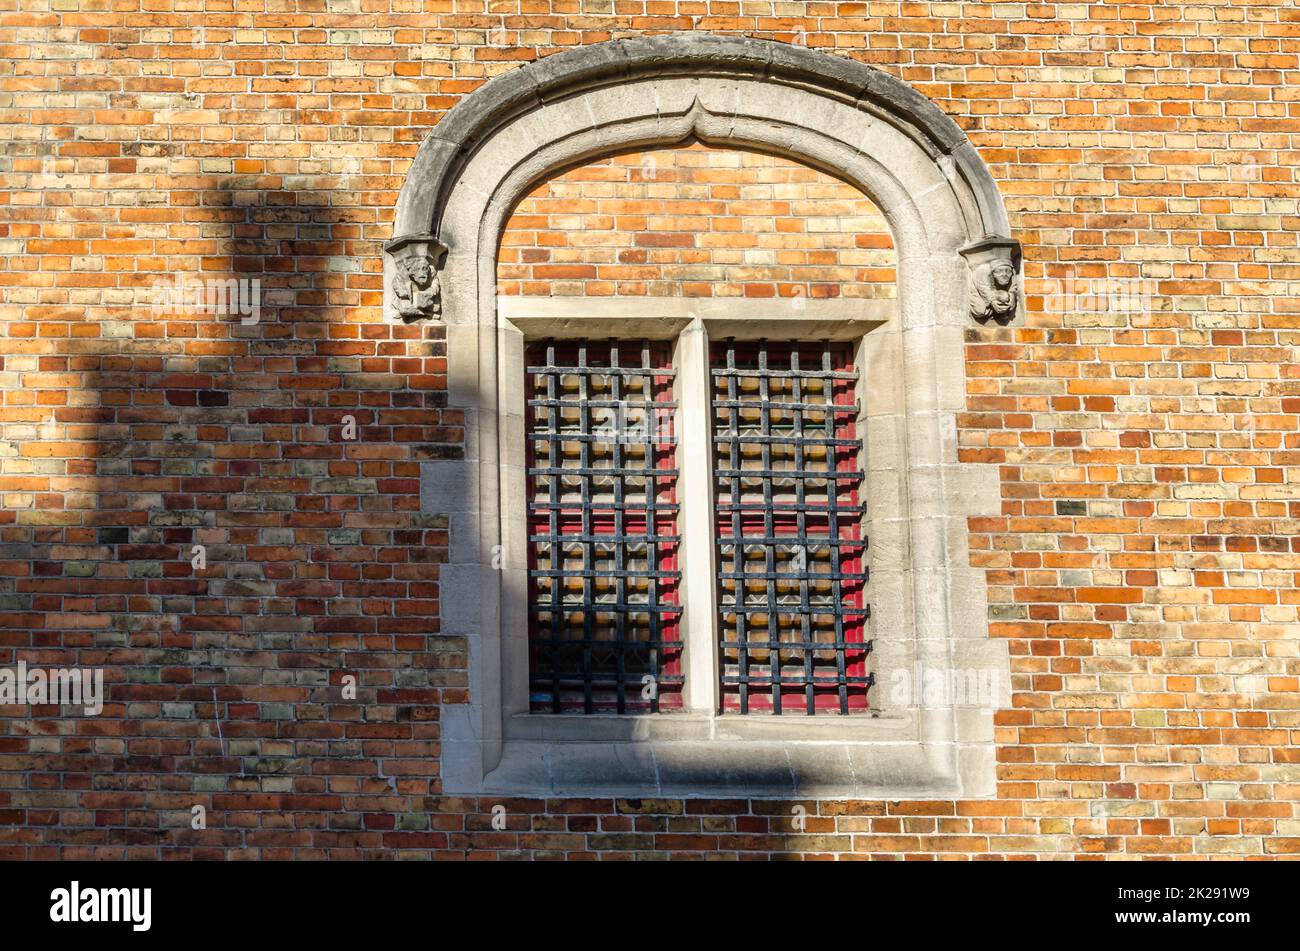 Dettaglio dell'architettura a Bruges, Belgio Foto Stock